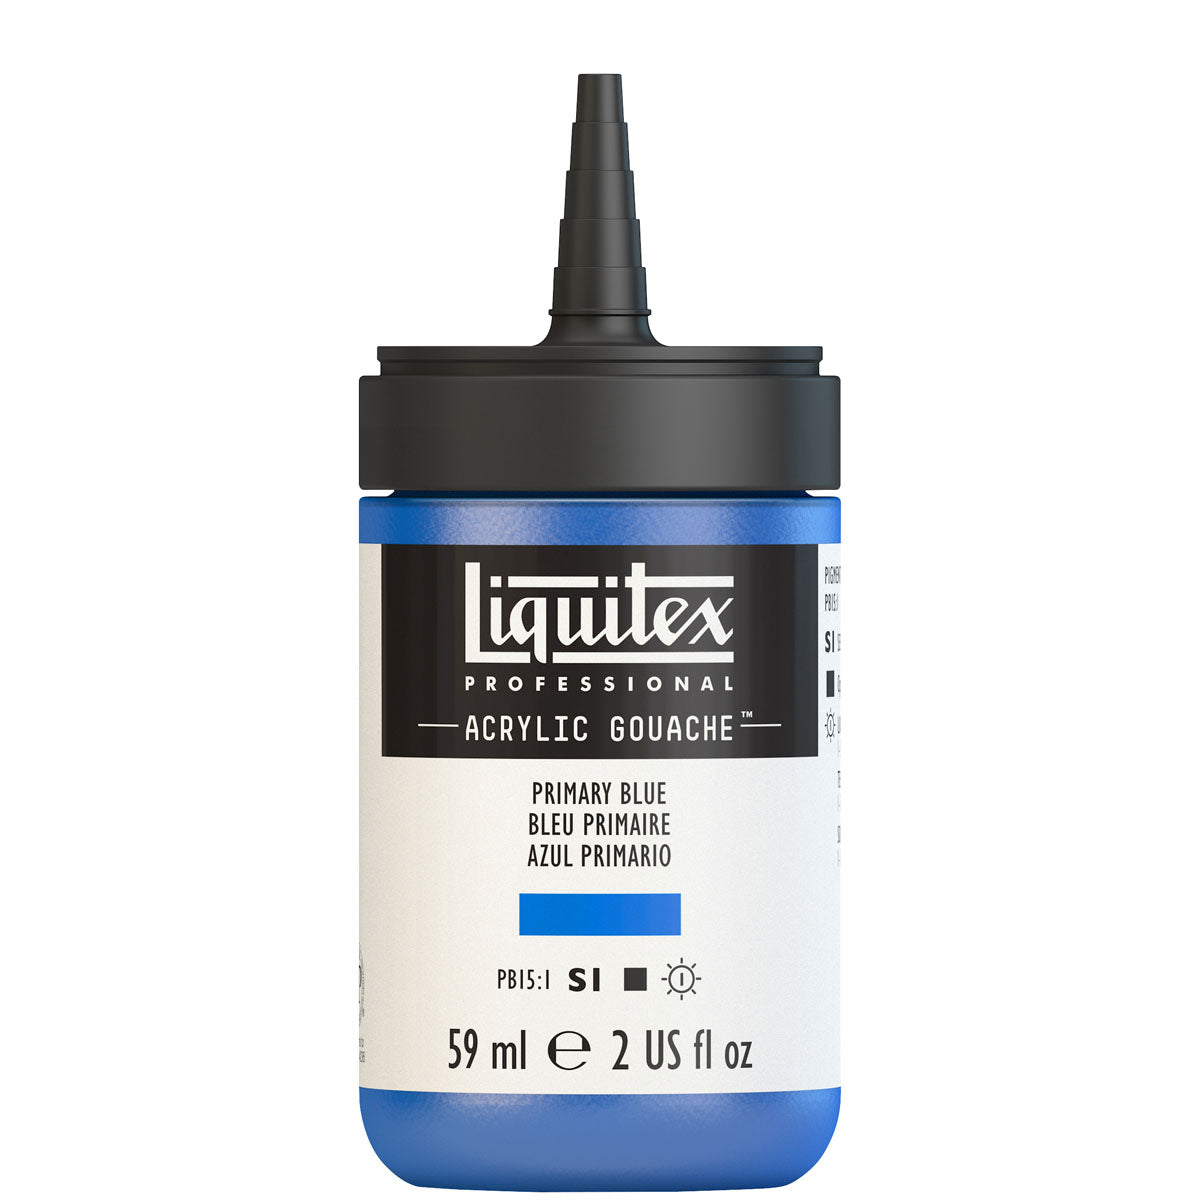 Liquitex - Acryl Gouache 59ml S1 - Primair Blue